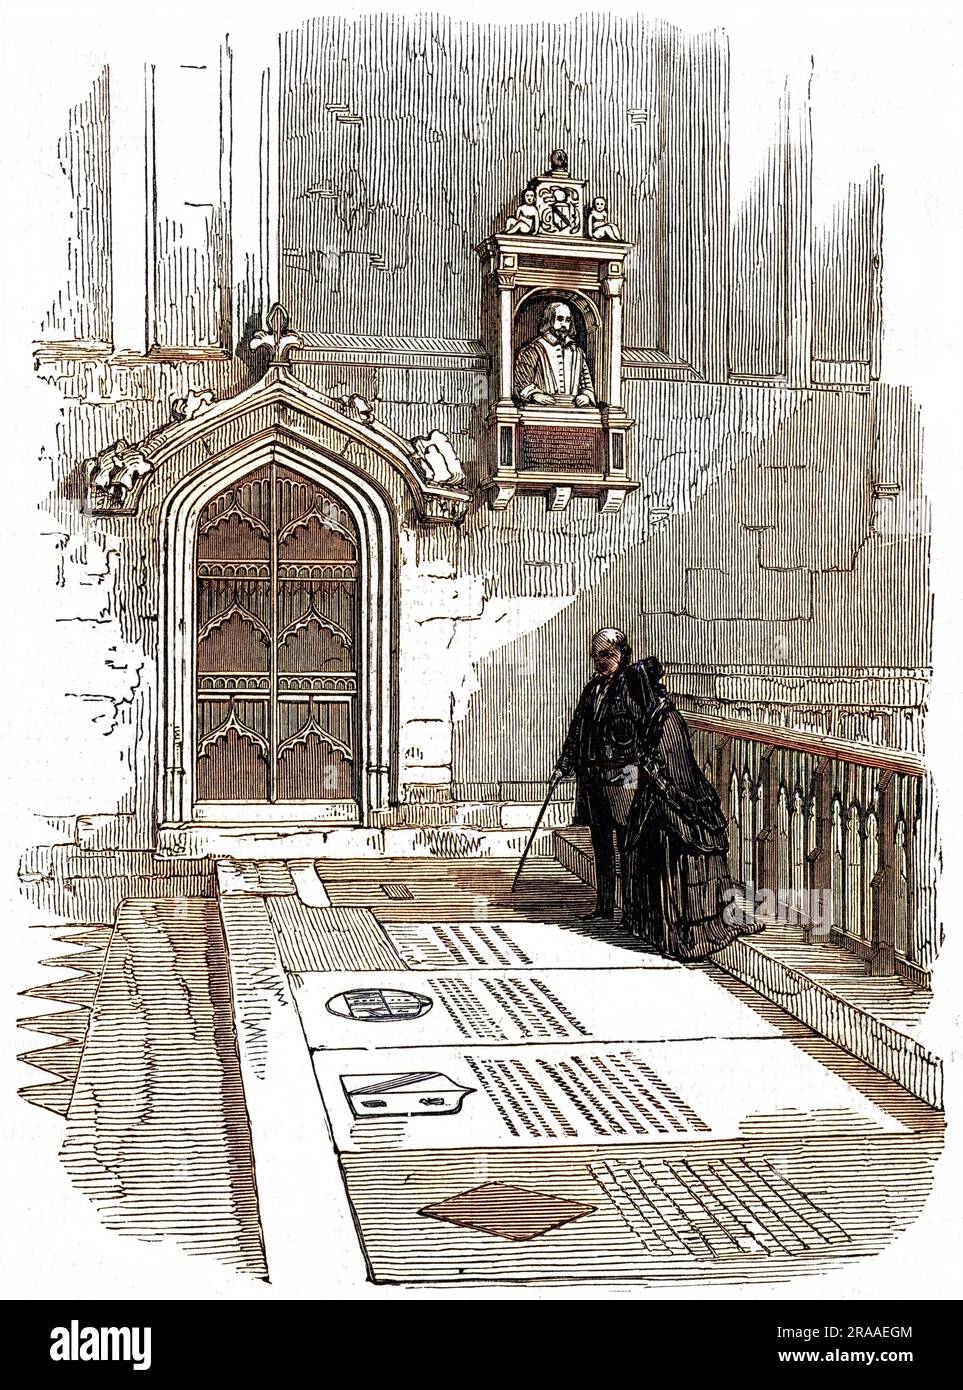 La tombe de Shakespeare dans le choeur de l'église de la Sainte Trinité, Stratford-on-Avon. Date: 1564 - 1616 Banque D'Images